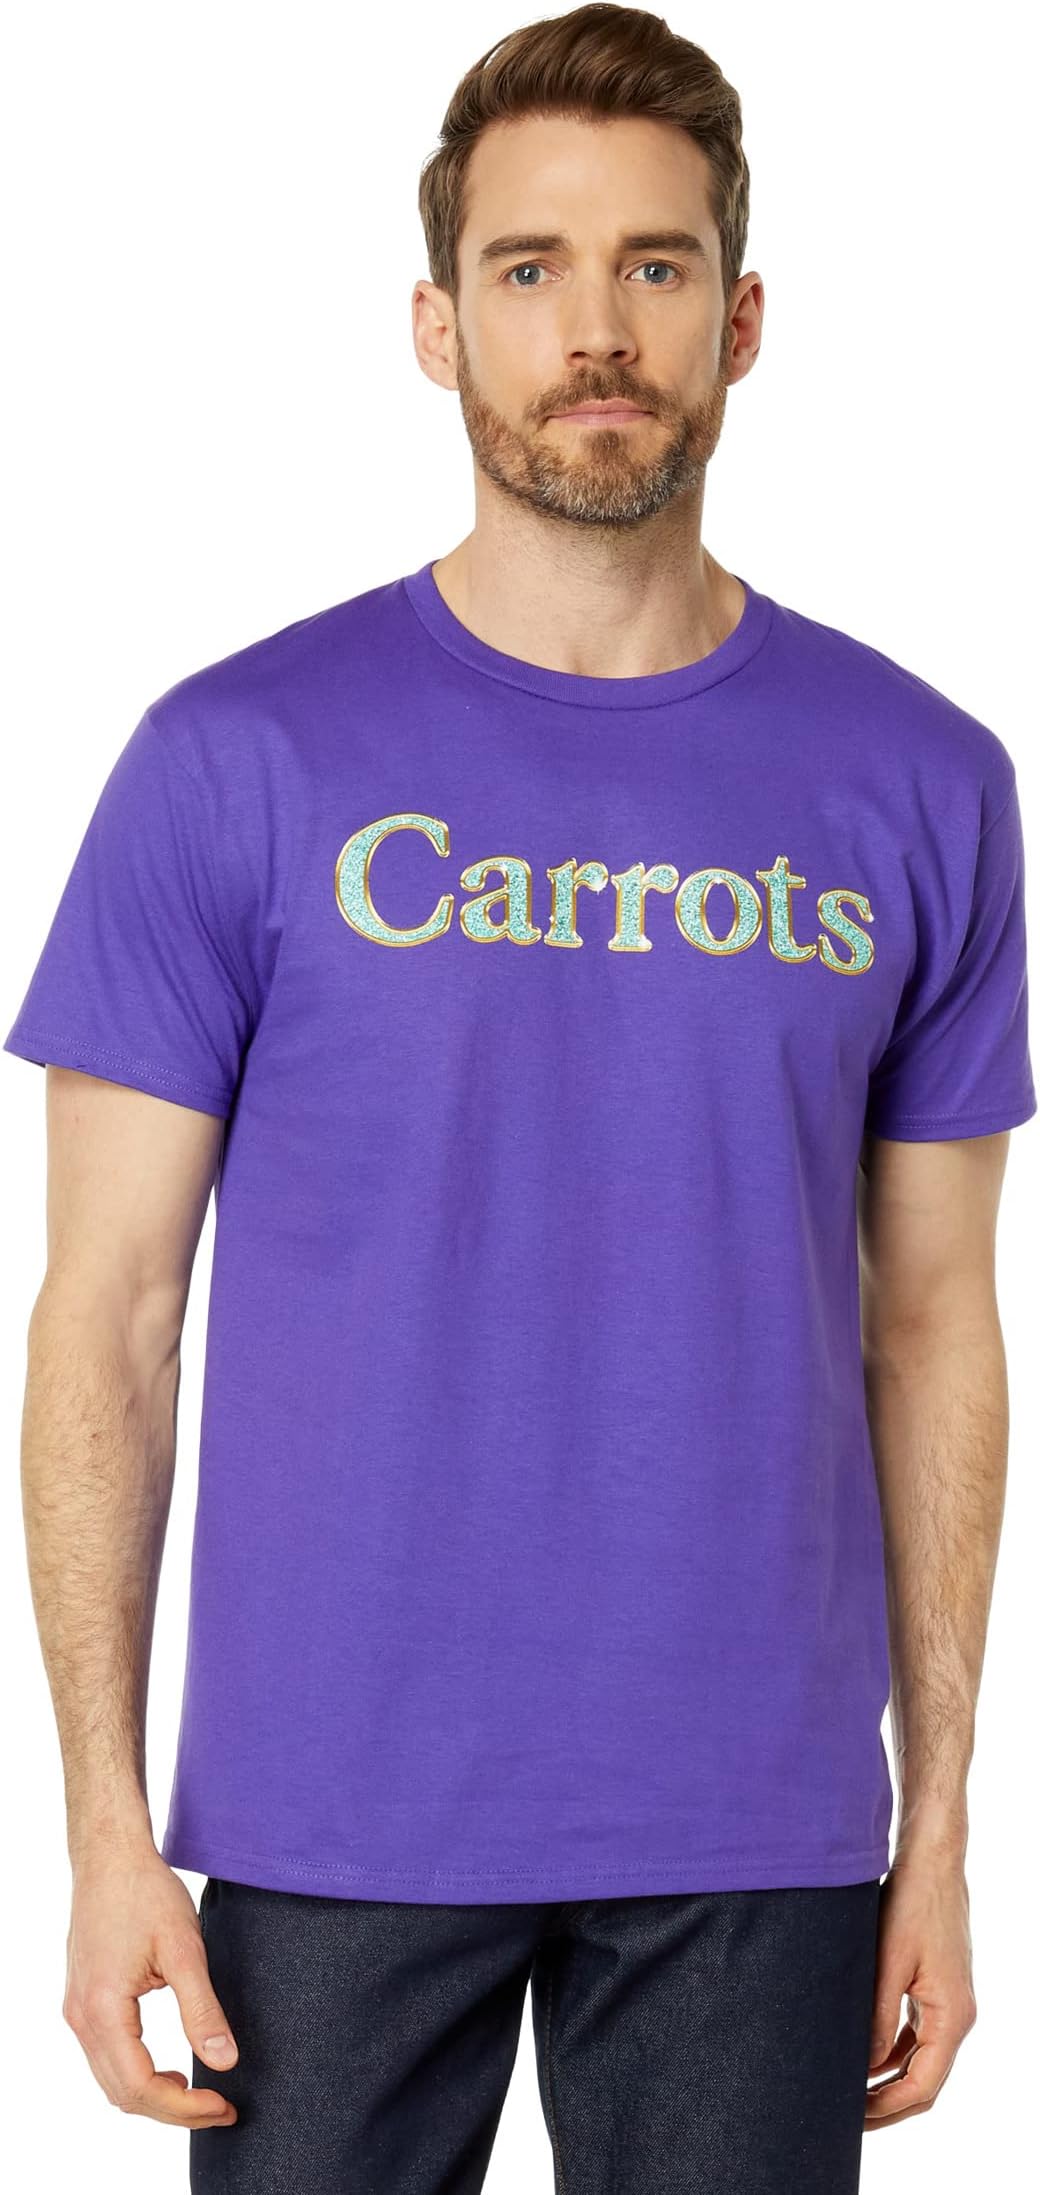 Футболка с надписью Vvs Carrots By Anwar Carrots, фиолетовый